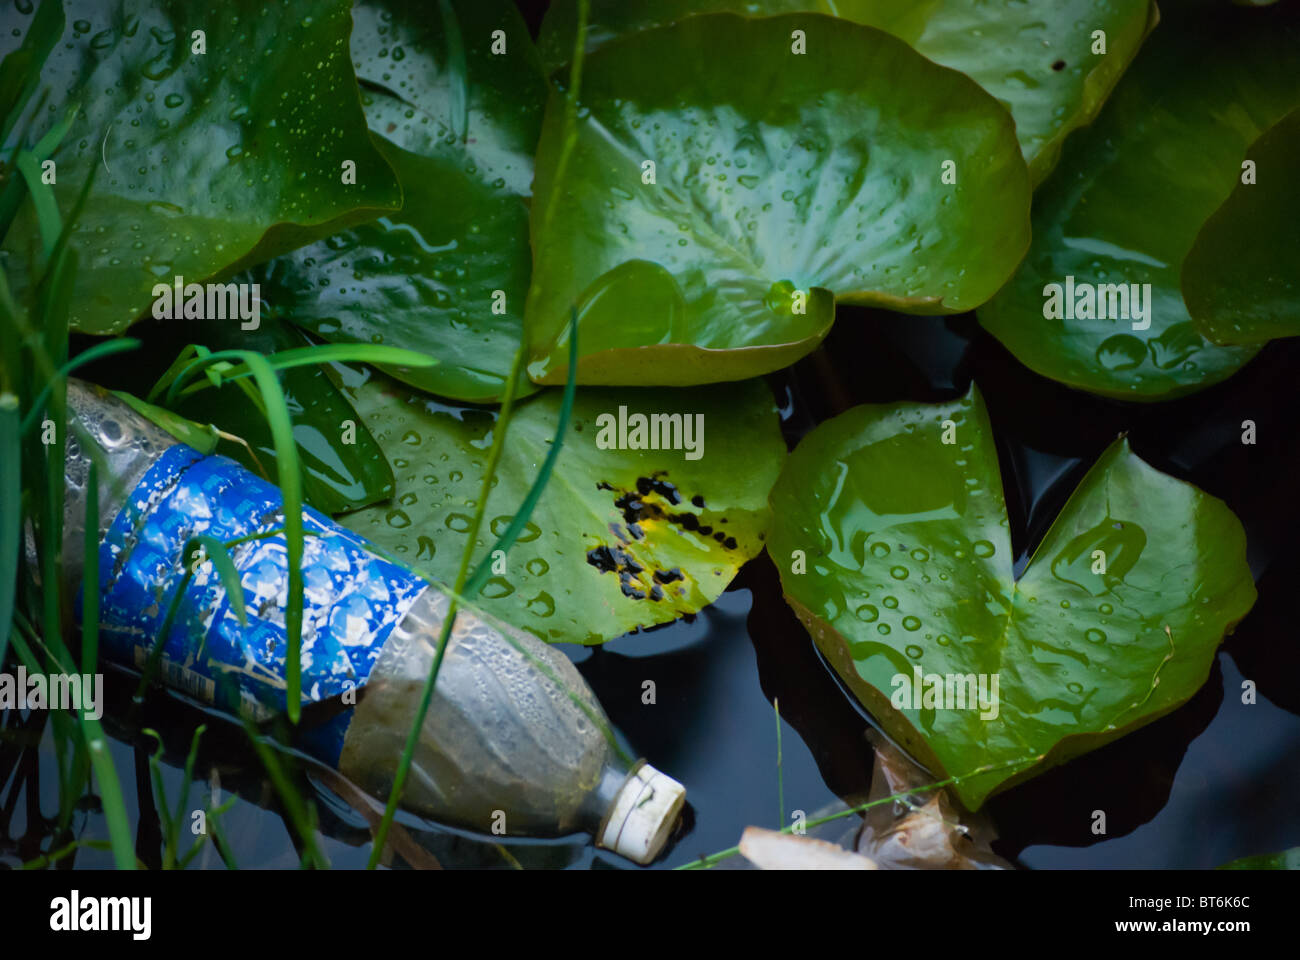 Verlässt eine gebrauchte und verschmutzte Wasser Plastikflasche in einen schönen Teich mit Seerose Stockfoto